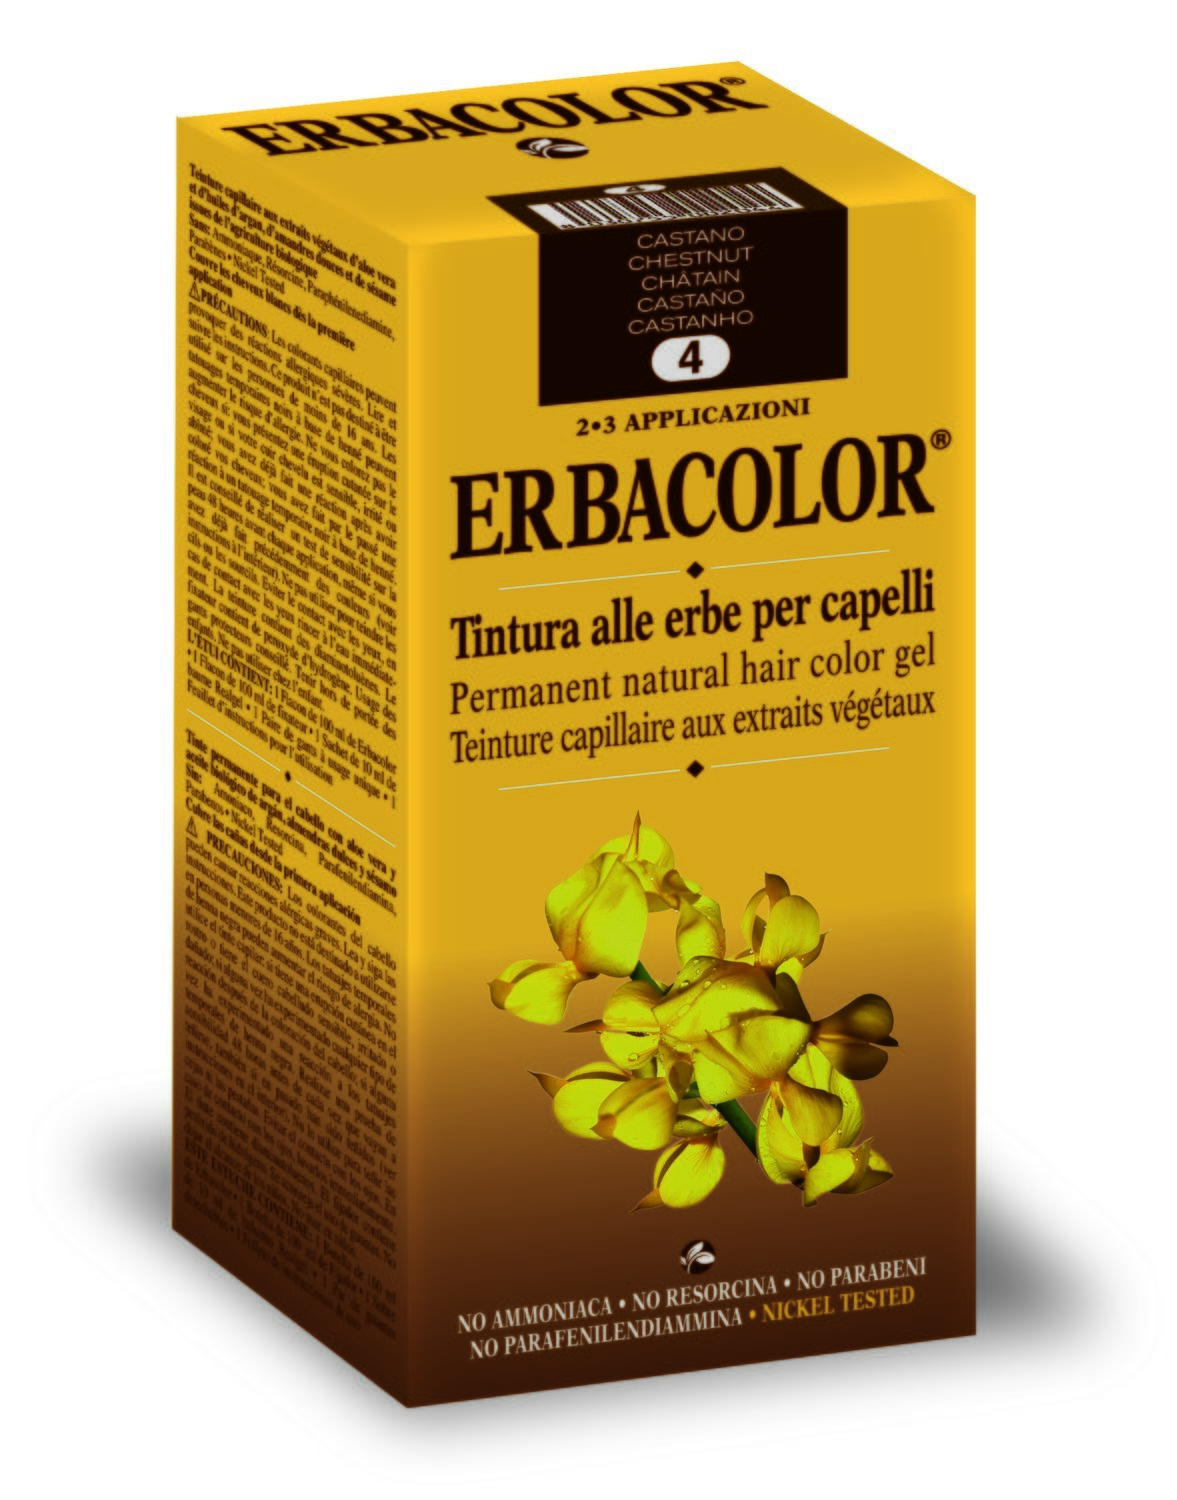 Erbacolor - Tinture alle erbe per capelli